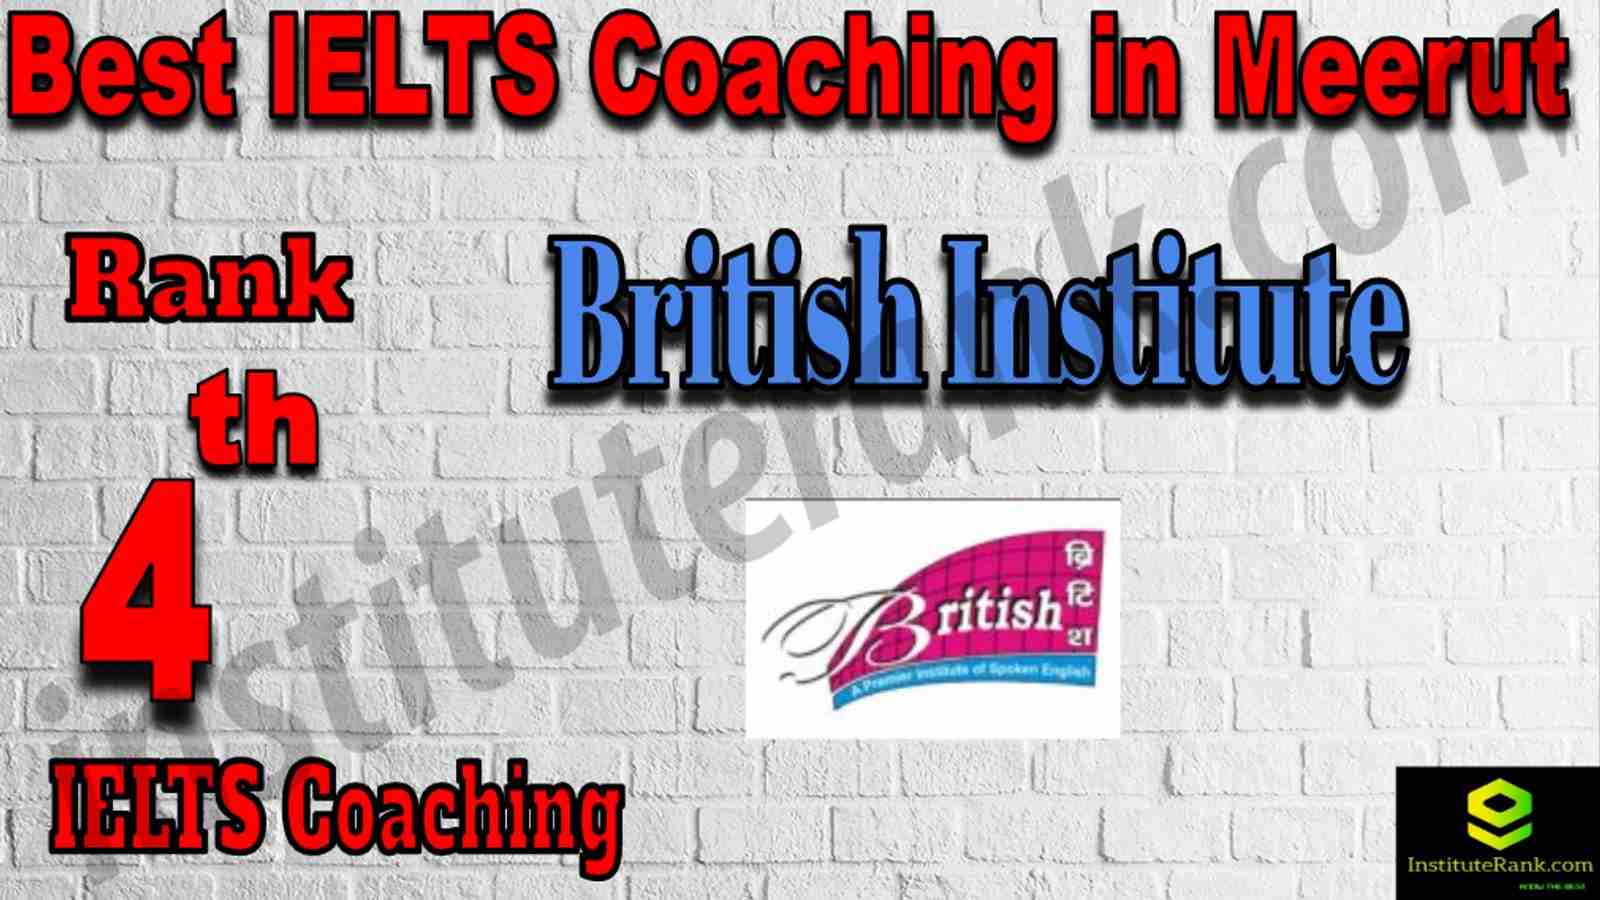 4th Best IELTS Coaching in Meerut